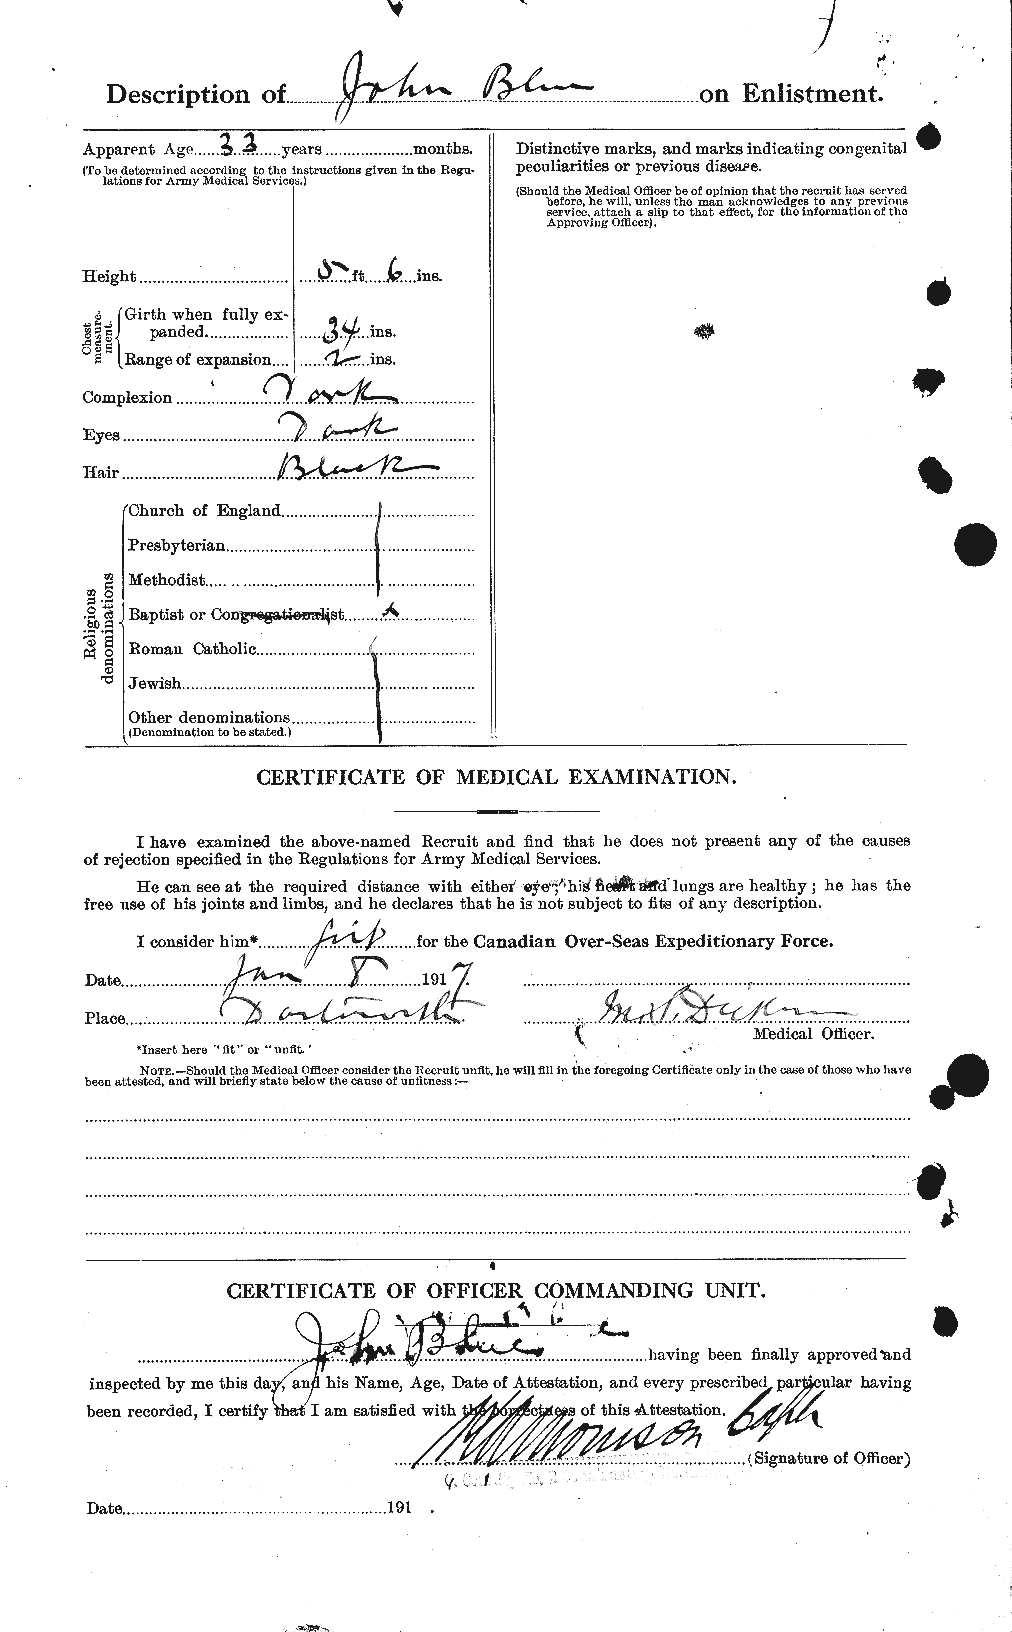 Dossiers du Personnel de la Première Guerre mondiale - CEC 247141b